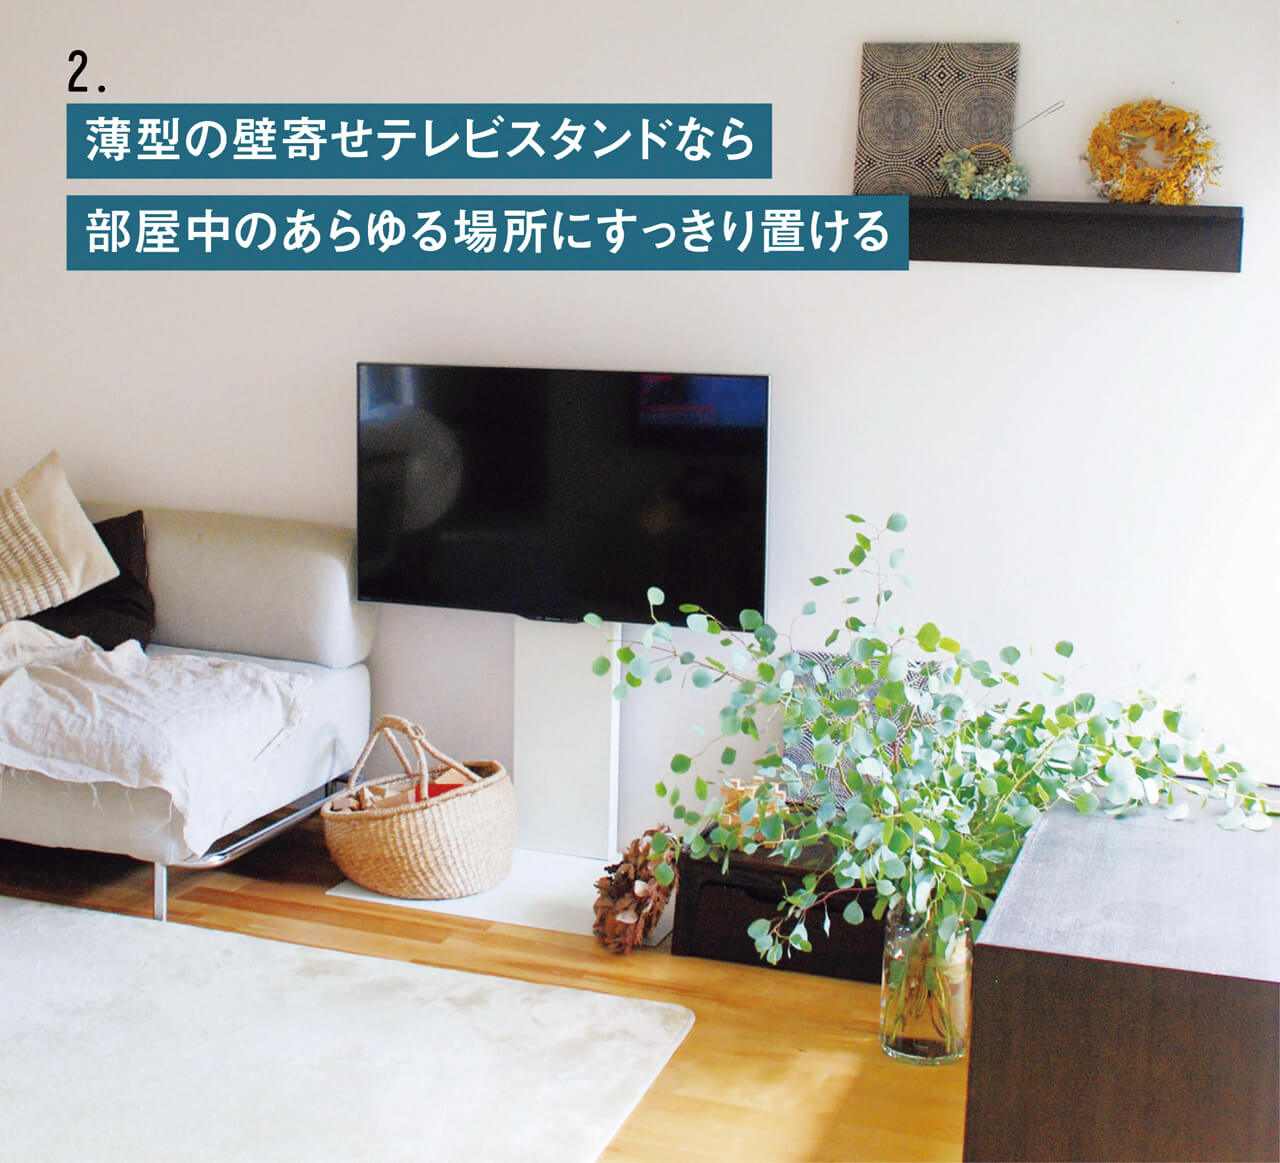 2.薄型の壁寄せテレビスタンドなら部屋中のあらゆる場所にすっきり置ける